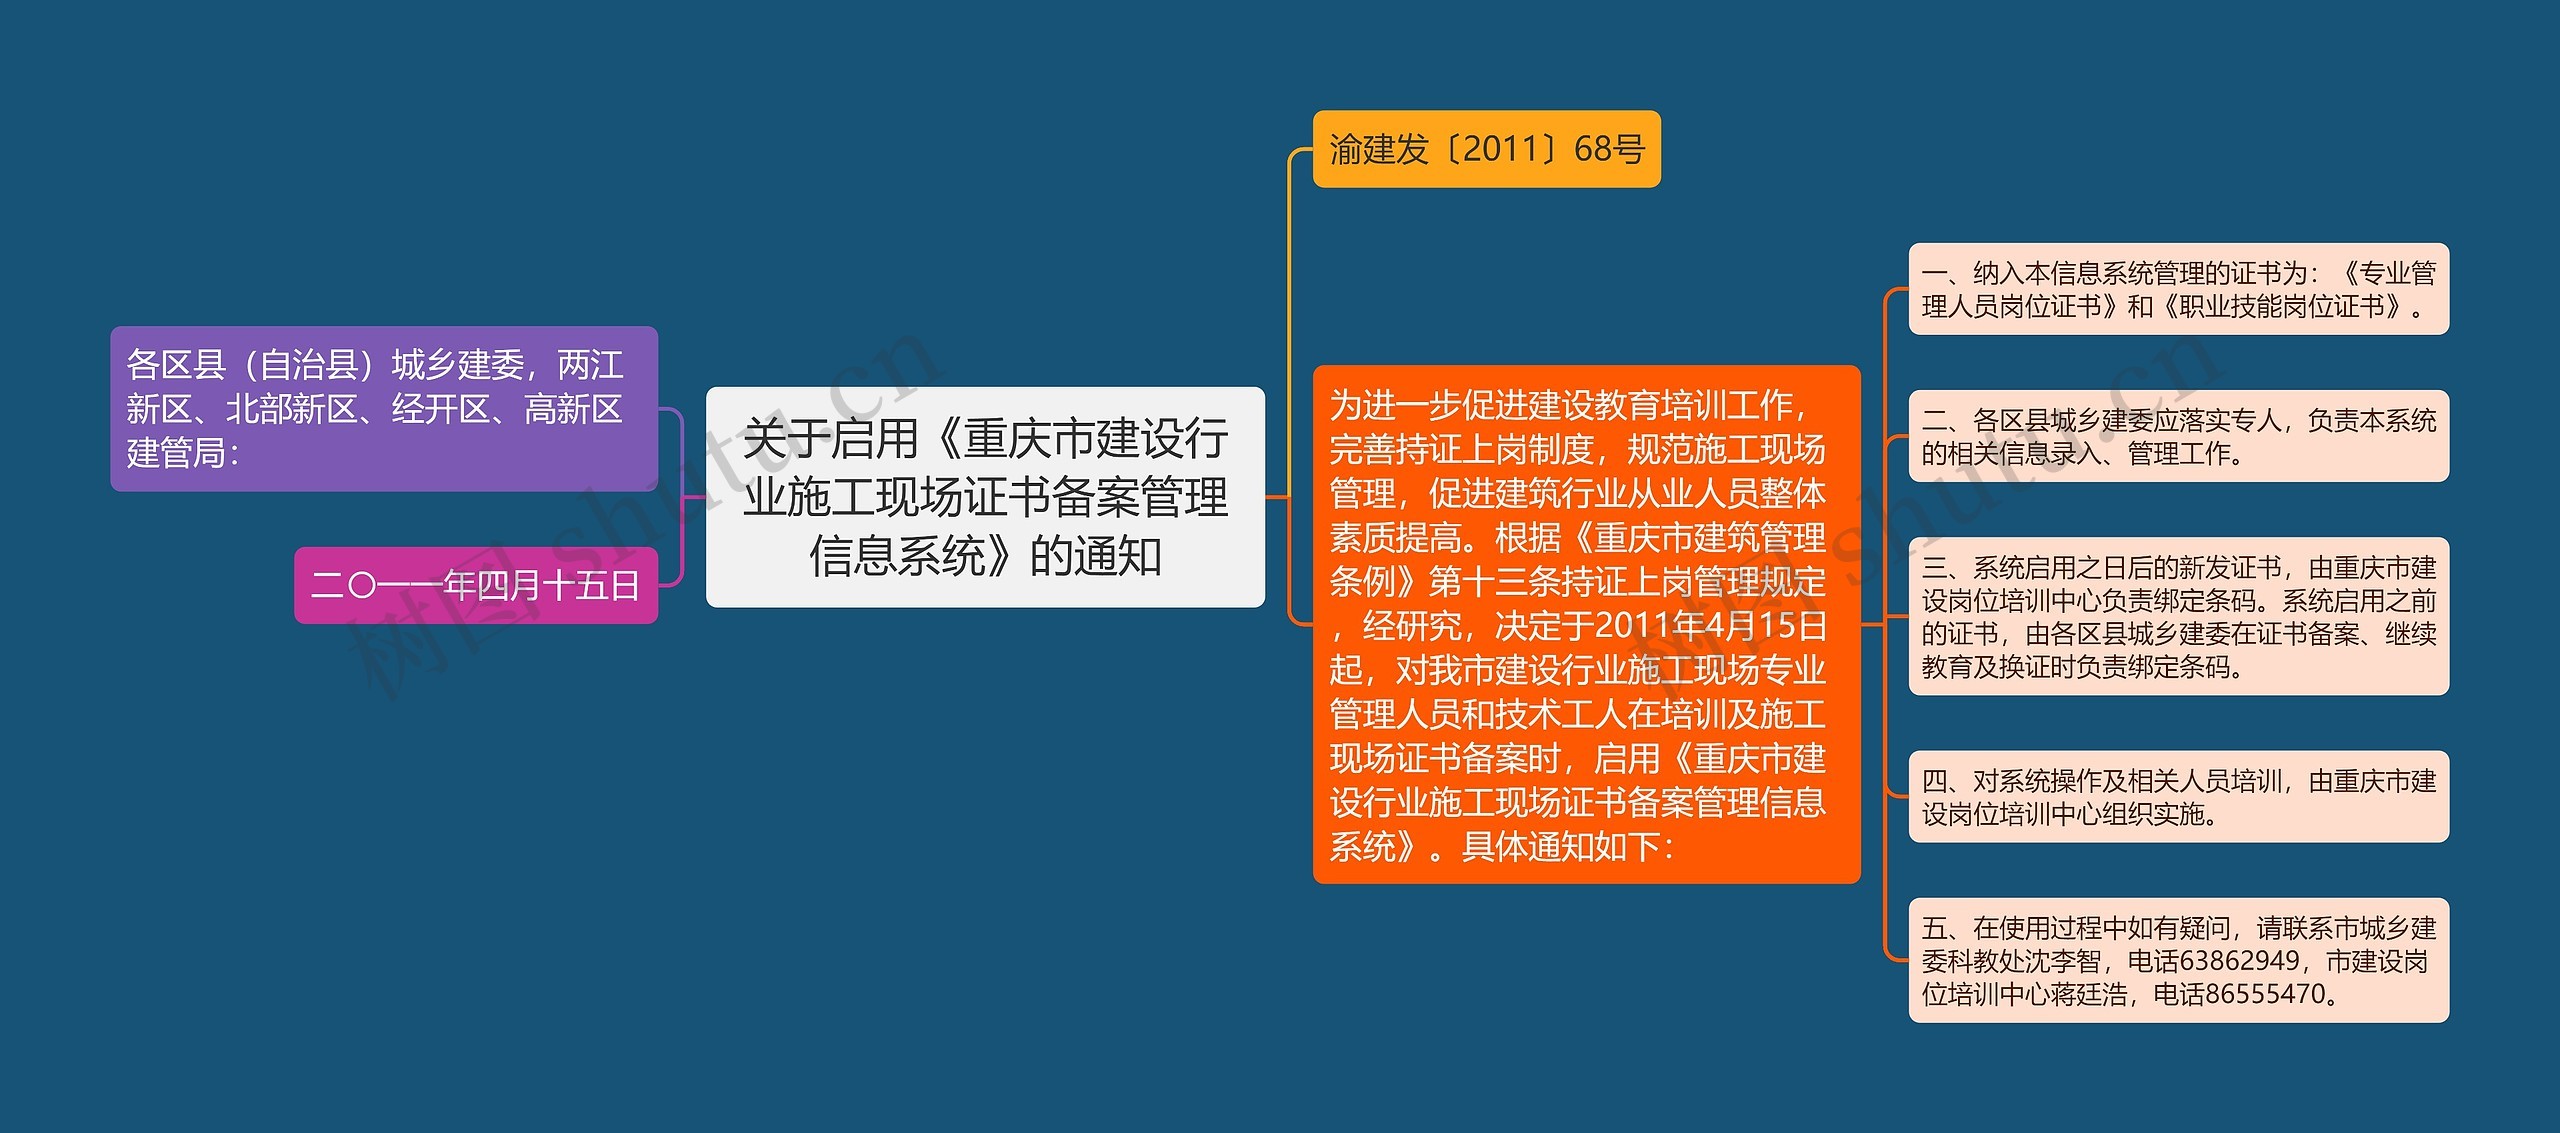 关于启用《重庆市建设行业施工现场证书备案管理信息系统》的通知